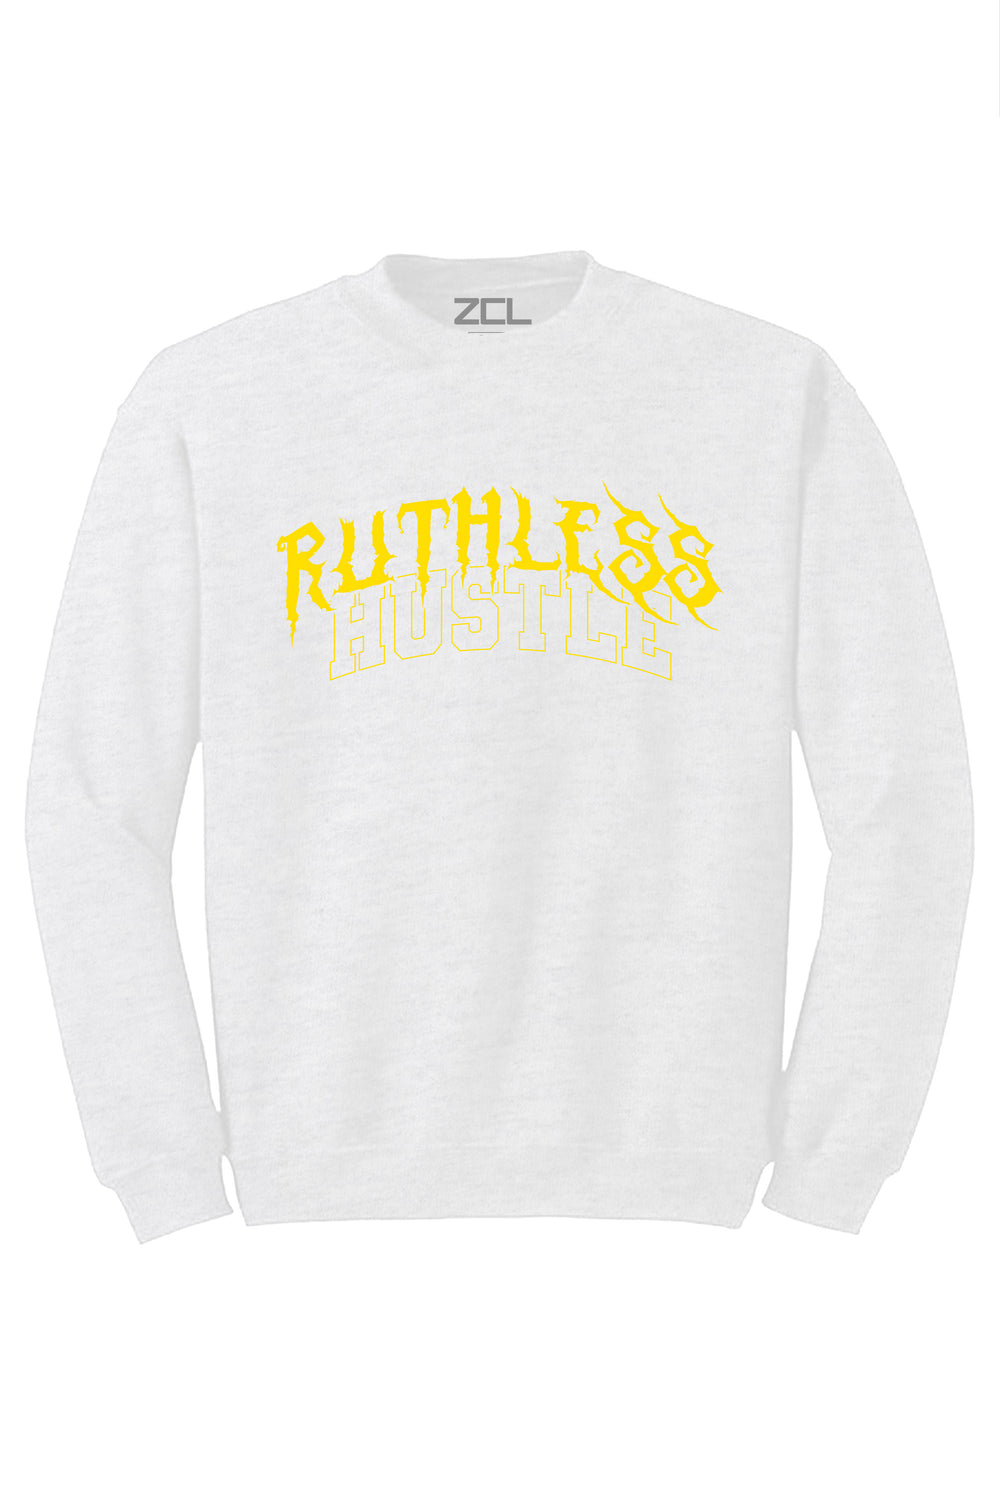 Ruthless Hustle Crewneck Sweatshirt (Yellow Logo)